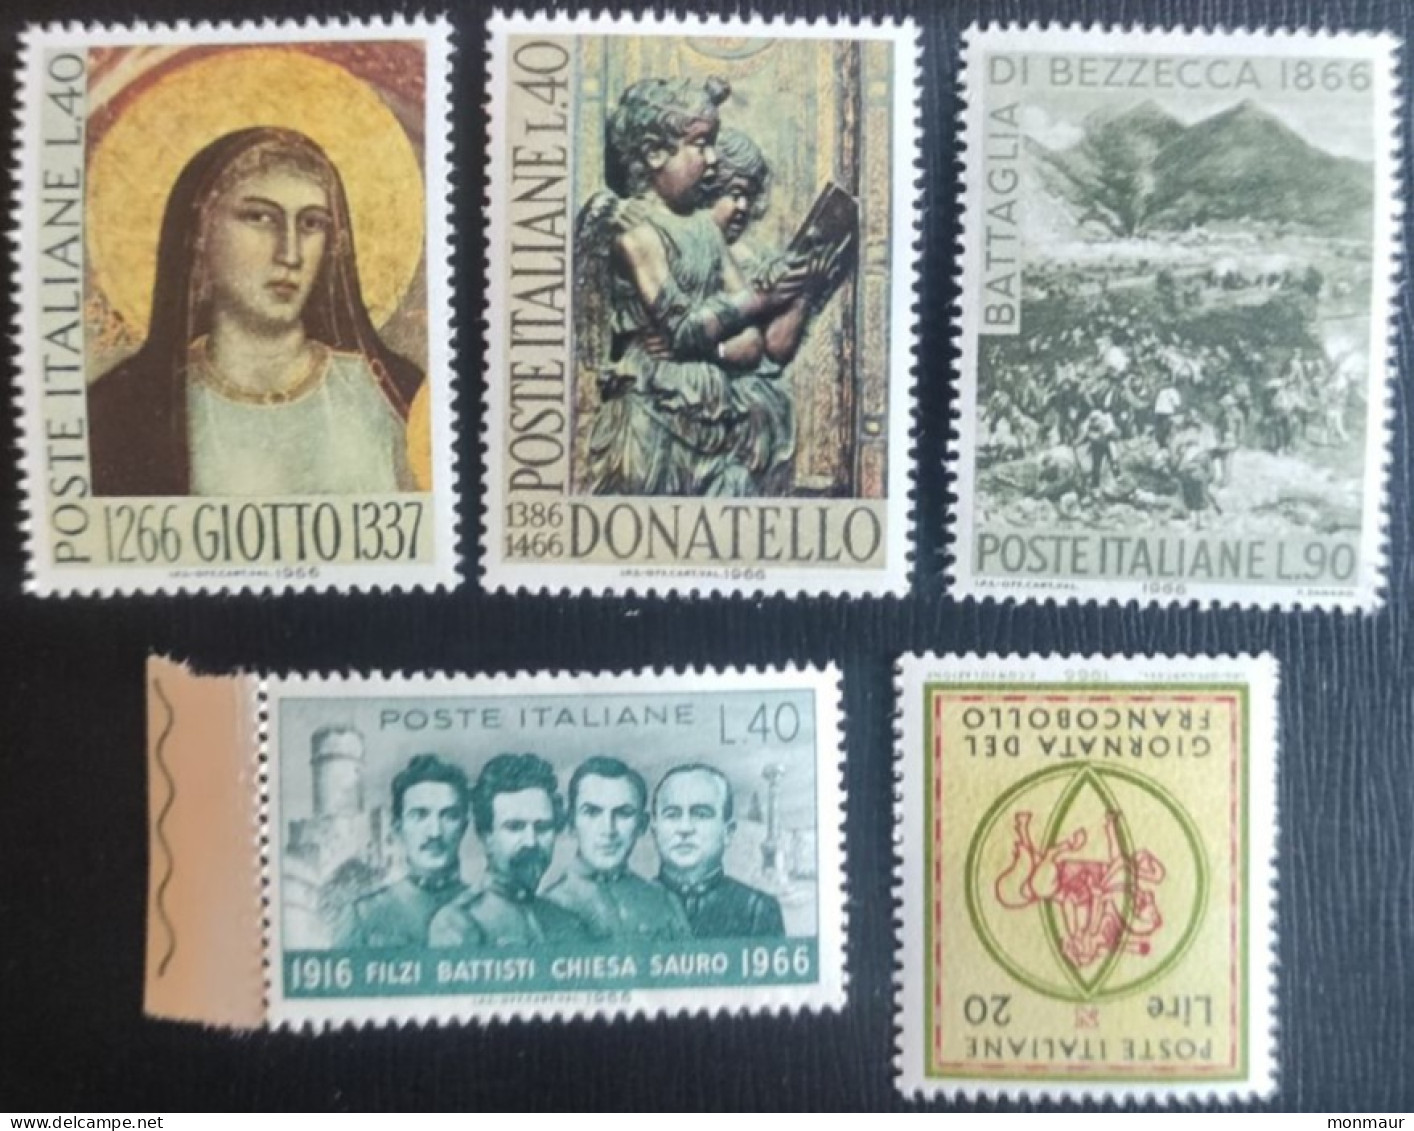 ITALIA 1966 GIOTTO-DONATELLO-BEZZECCA-FILZI BATTISTI-GIORNATA FRANCOBOLLO - 1961-70: Nieuw/plakker